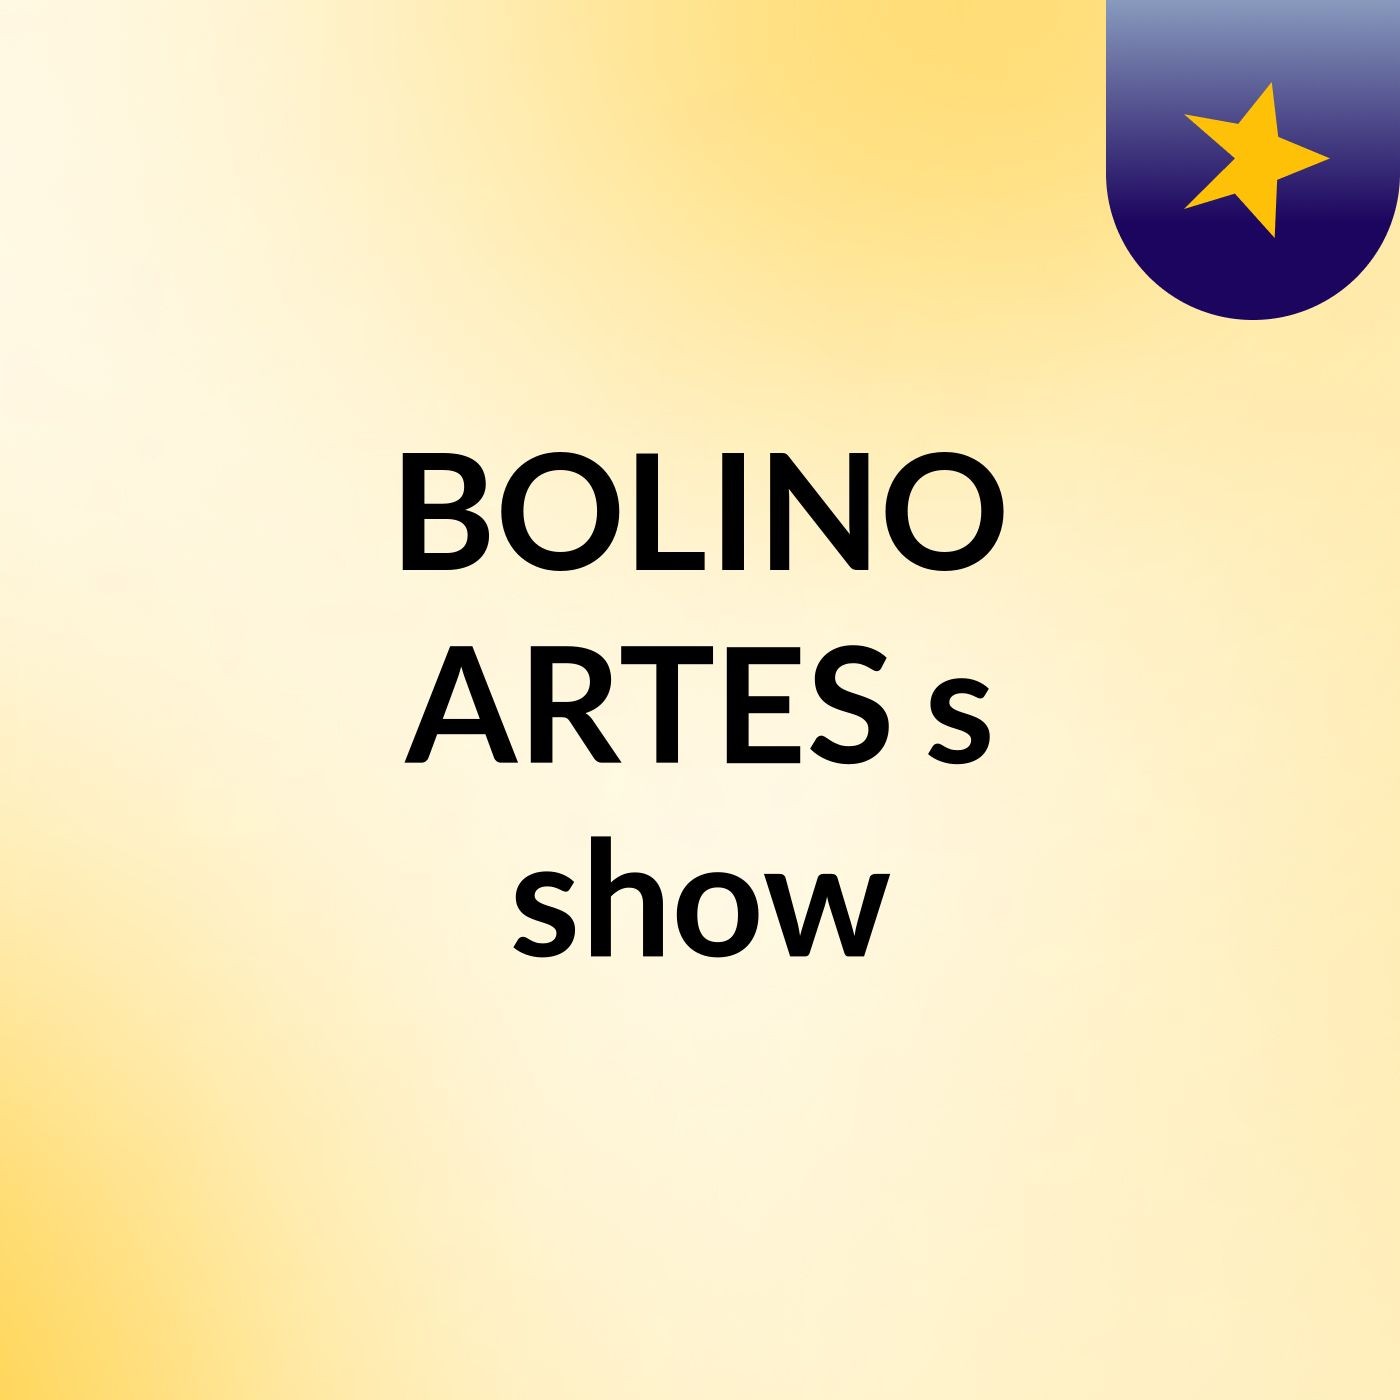 BOLINO ARTES's show